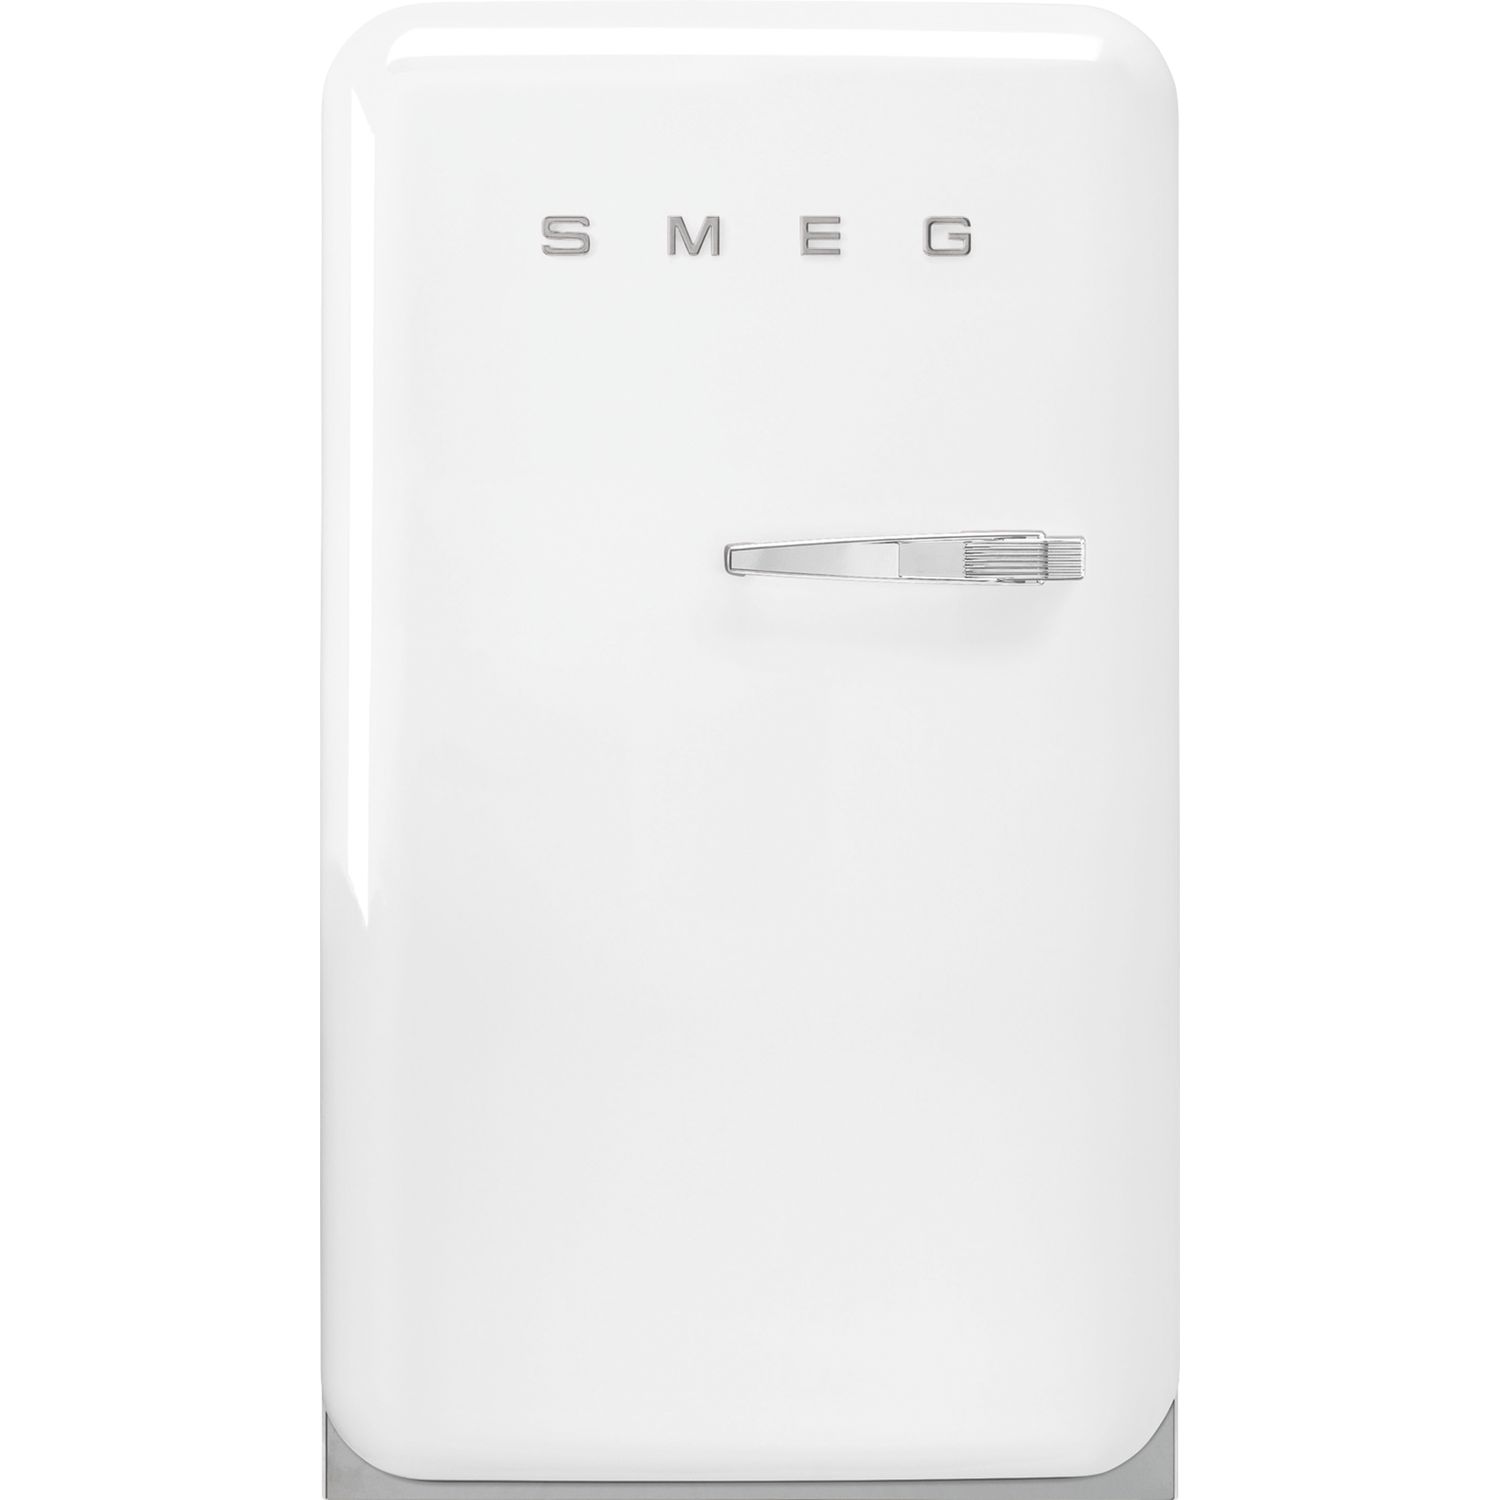 Retro Linksanschlag mit Weiß, SMEG Stand-Kühlschrank Gefrierfach FAB10LWH5